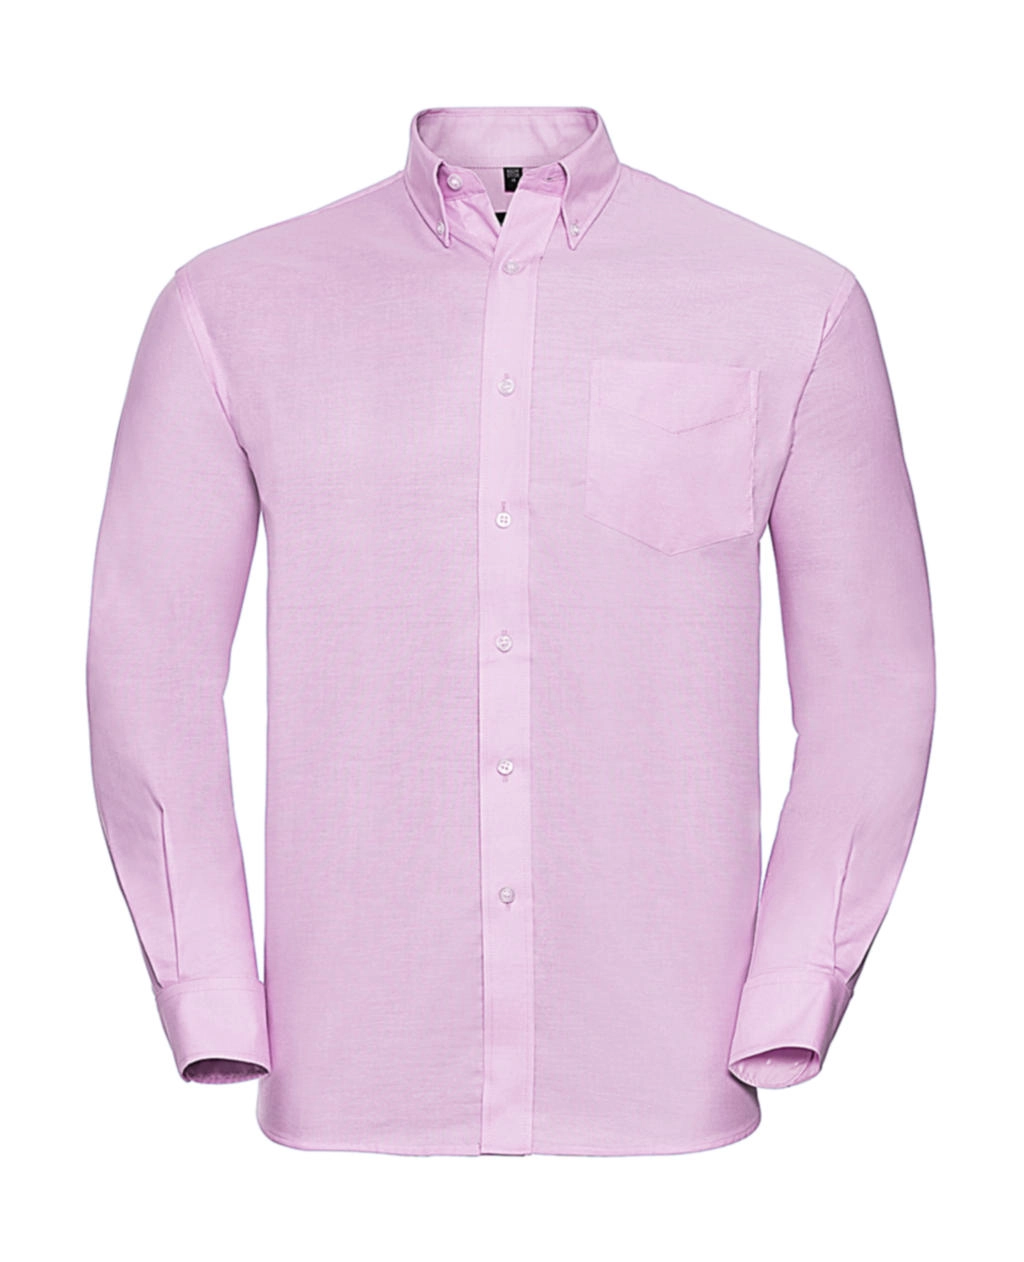 Oxford Shirt LS zum Besticken und Bedrucken in der Farbe Classic Pink mit Ihren Logo, Schriftzug oder Motiv.